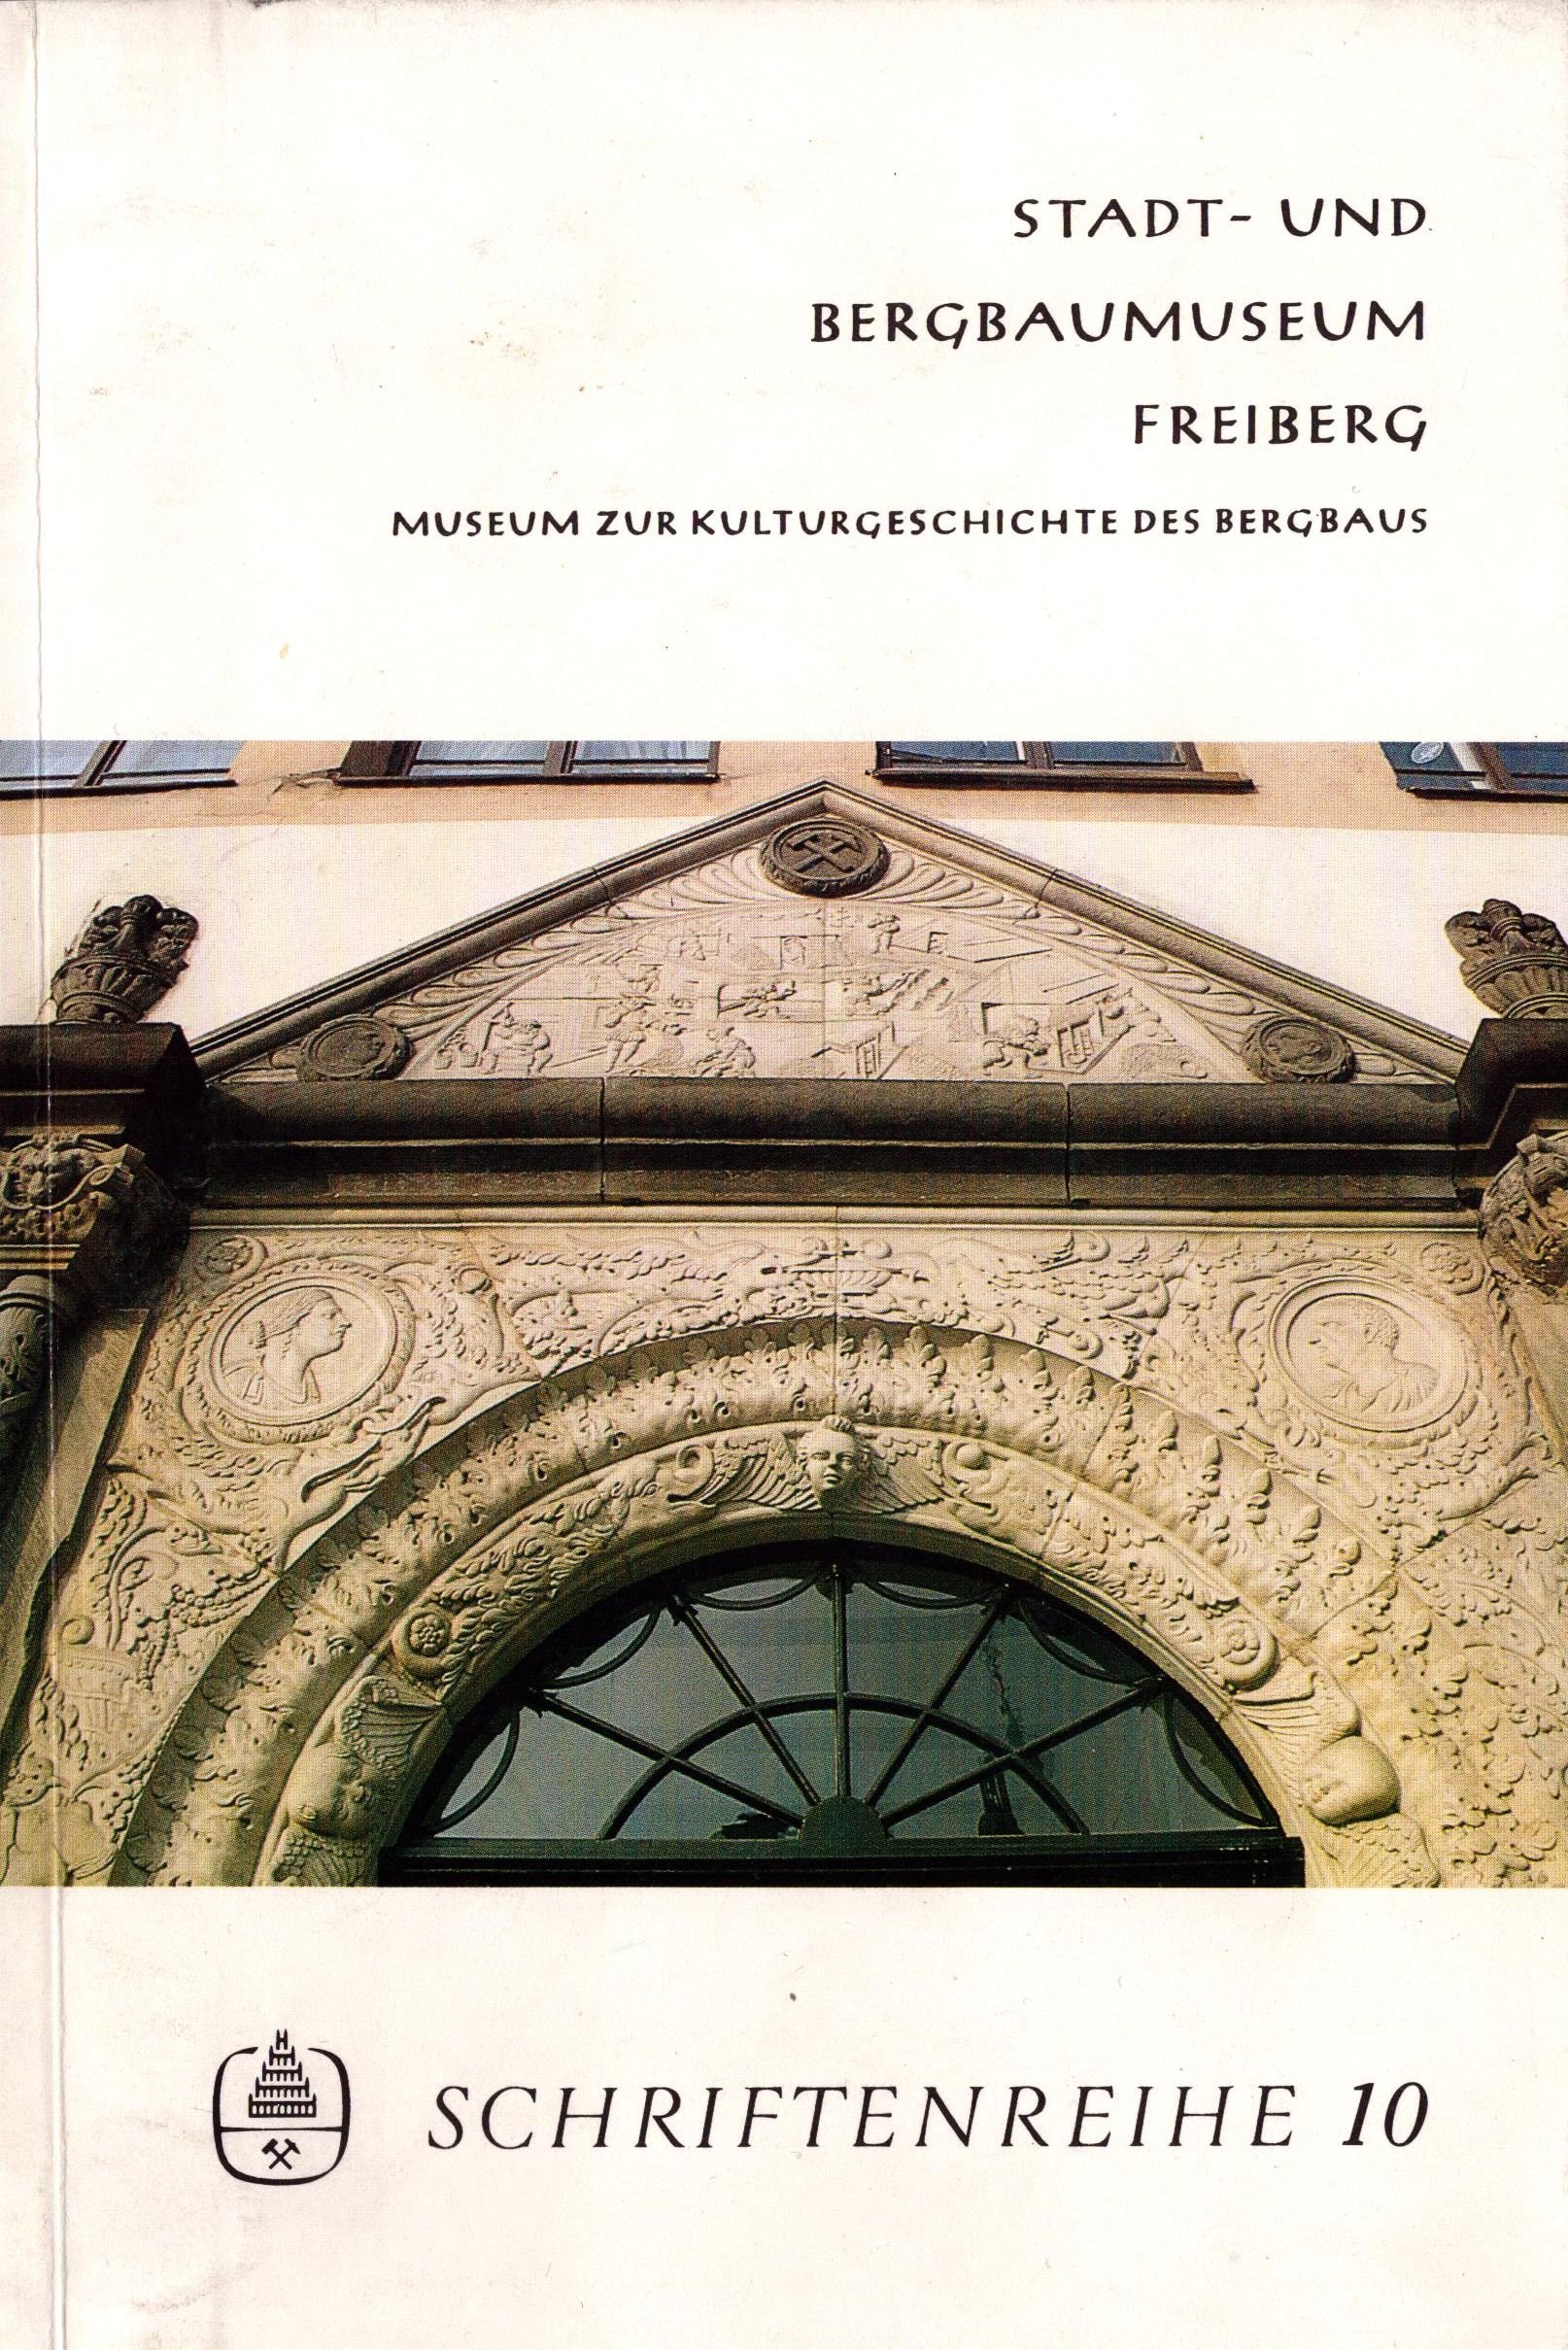 Stadt- und Bergbaumuseum Freiberg - Schriftenreihe 10 (Archiv SAXONIA-FREIBERG-STIFTUNG CC BY-NC-SA)